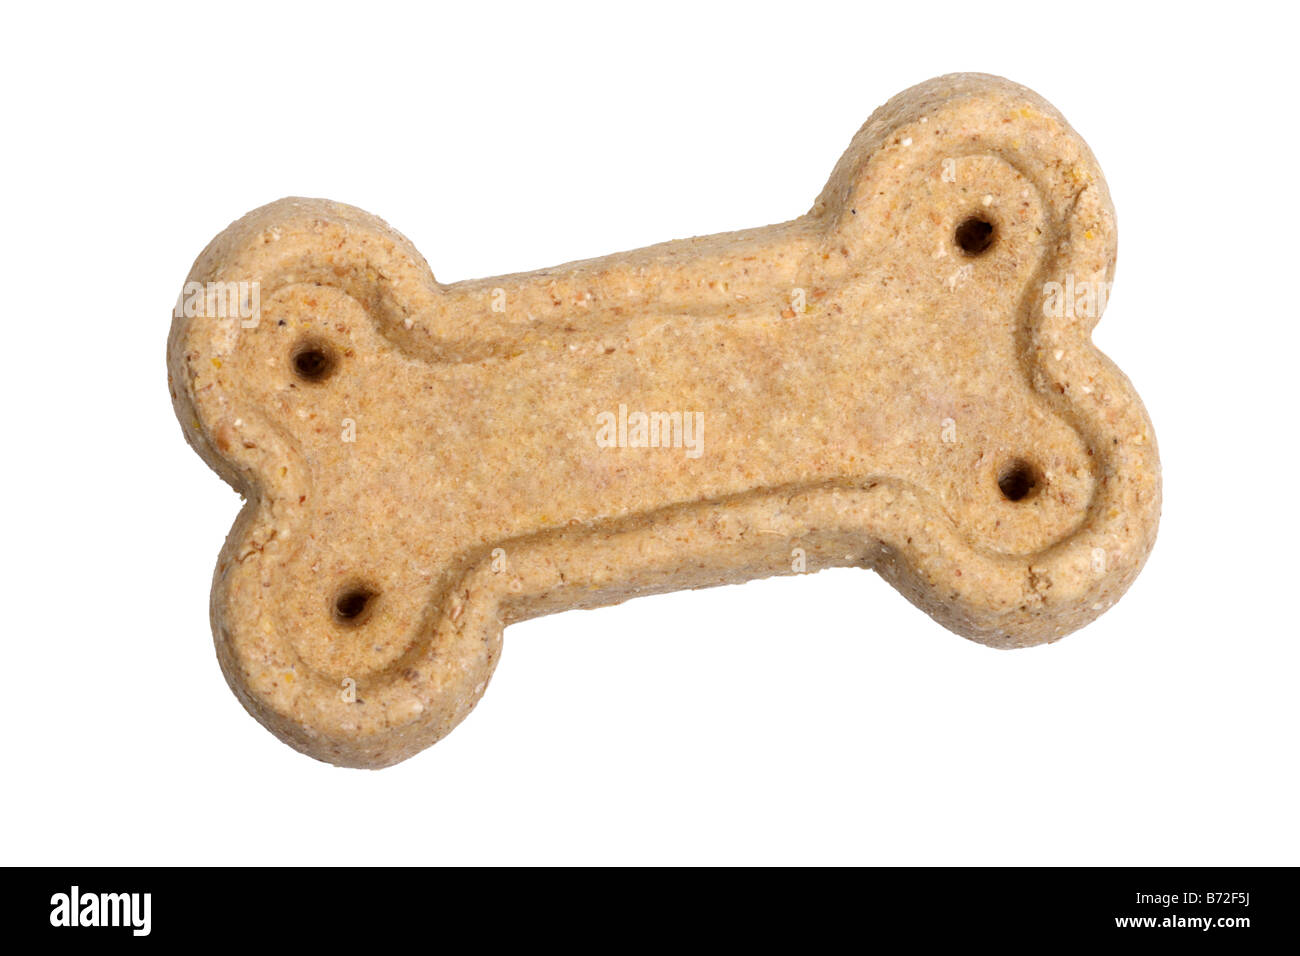 Dog bone treat cut out on white background Stock Photo